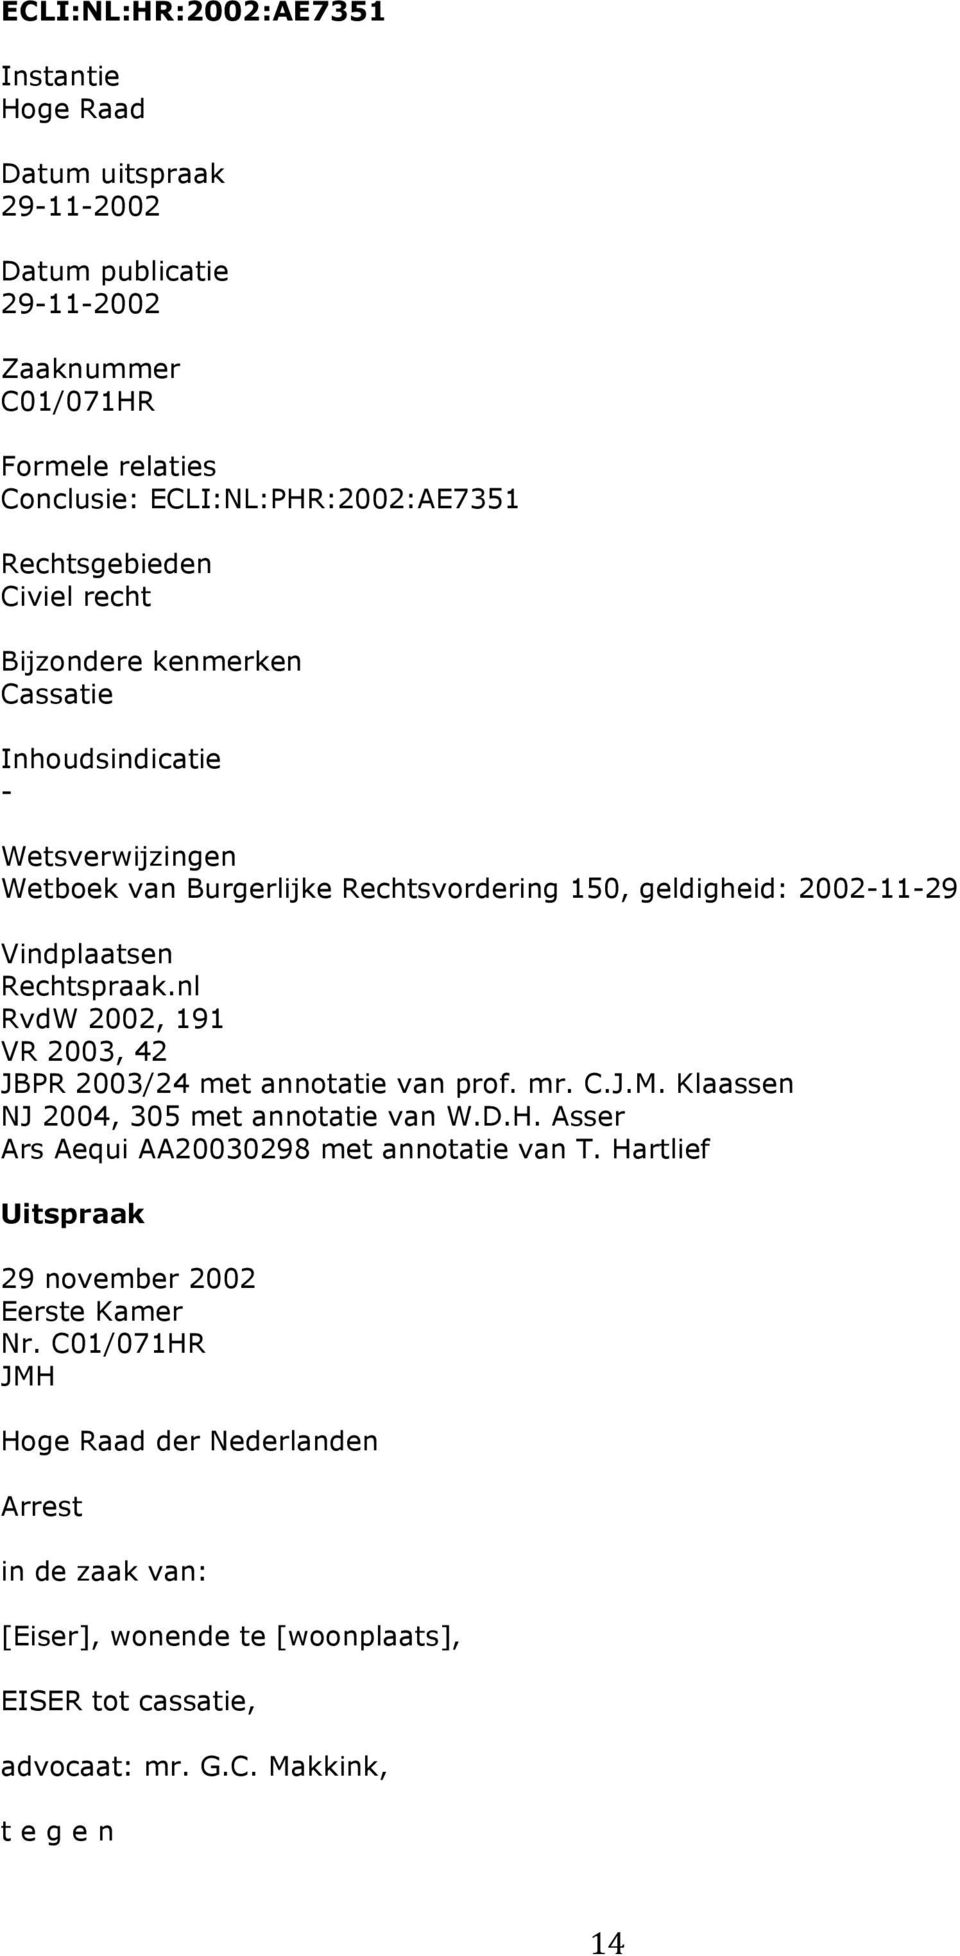 nl RvdW 2002, 191 VR 2003, 42 JBPR 2003/24 met annotatie van prof. mr. C.J.M. Klaassen NJ 2004, 305 met annotatie van W.D.H. Asser Ars Aequi AA20030298 met annotatie van T.